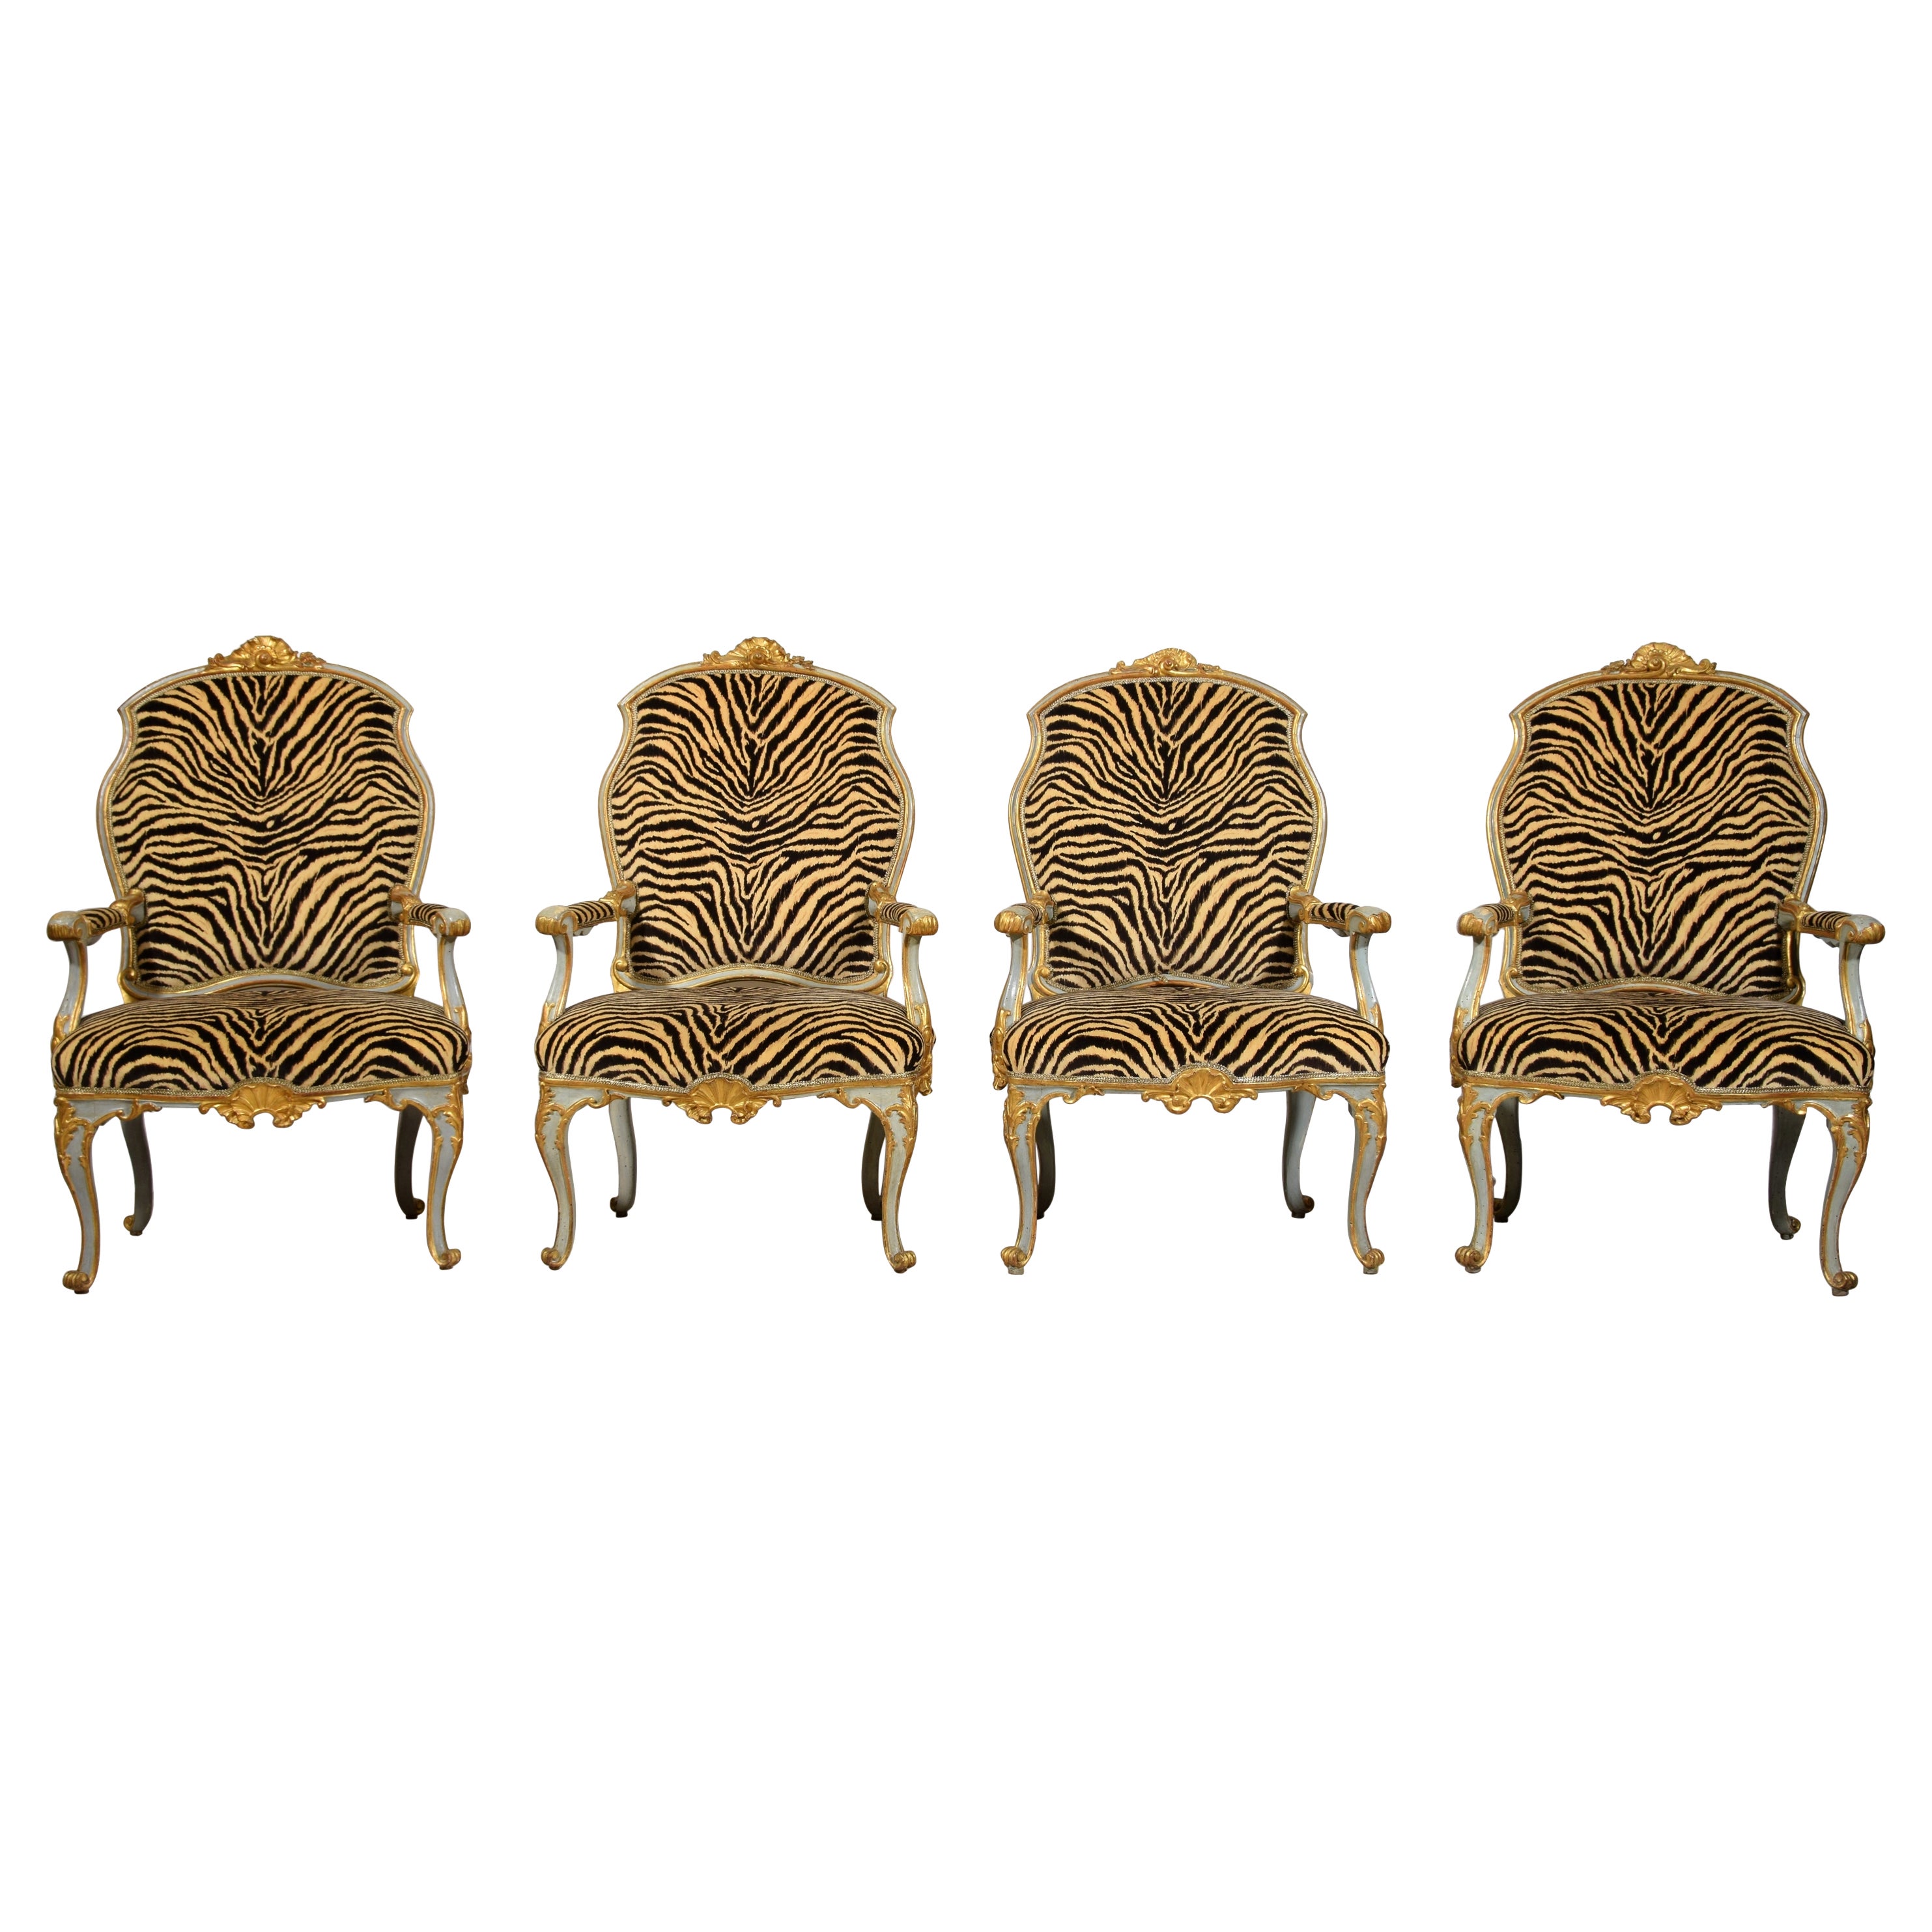 Quatre grands fauteuils italiens en bois laqué et doré du XVIIIe siècle